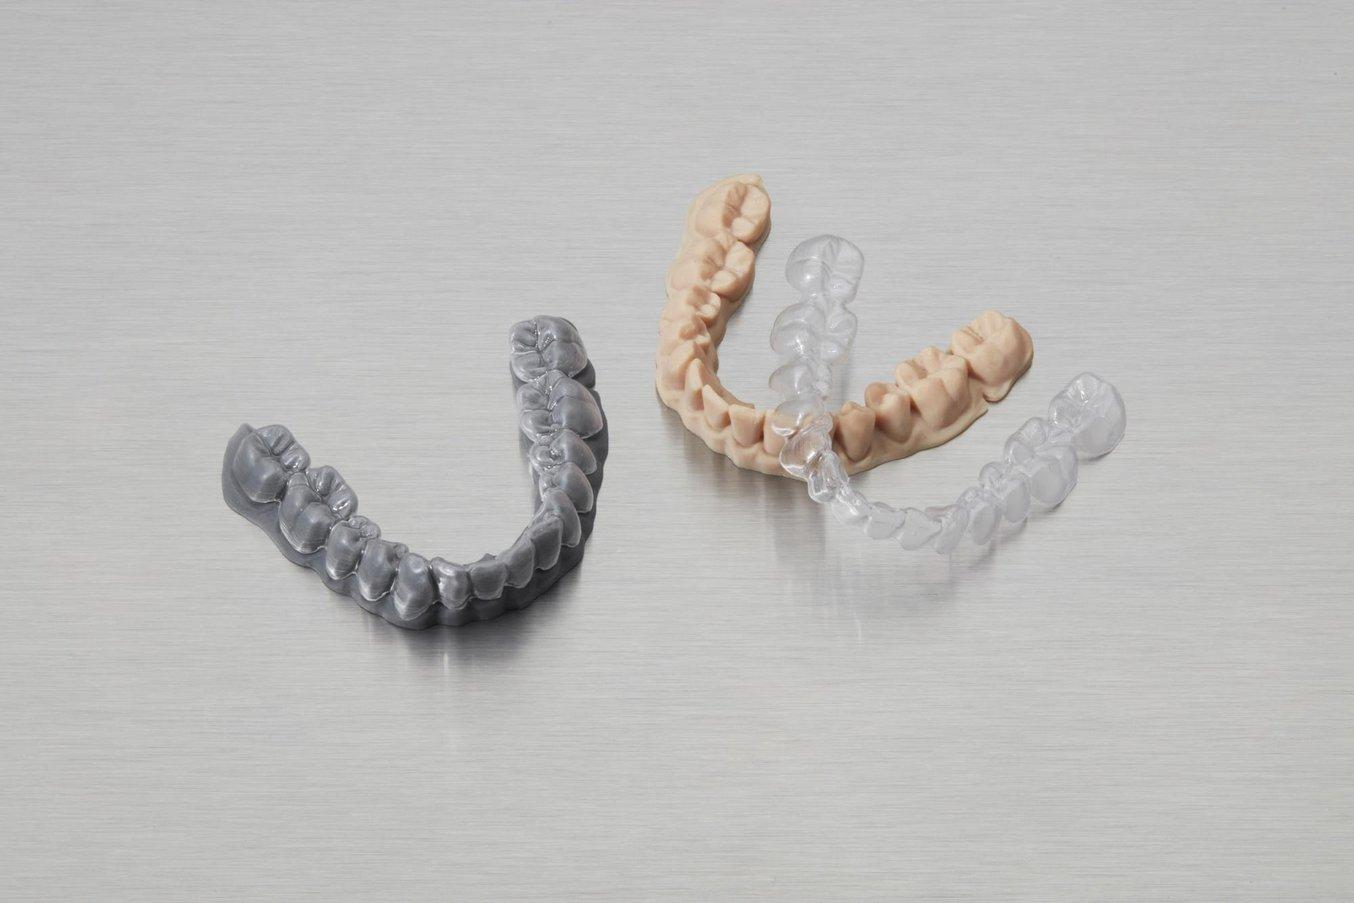 Gli allineatori trasparenti, oggi tra i trattamenti ortodontici più comuni, non potrebbero esistere senza tecnologie digitali come la stampa 3D.